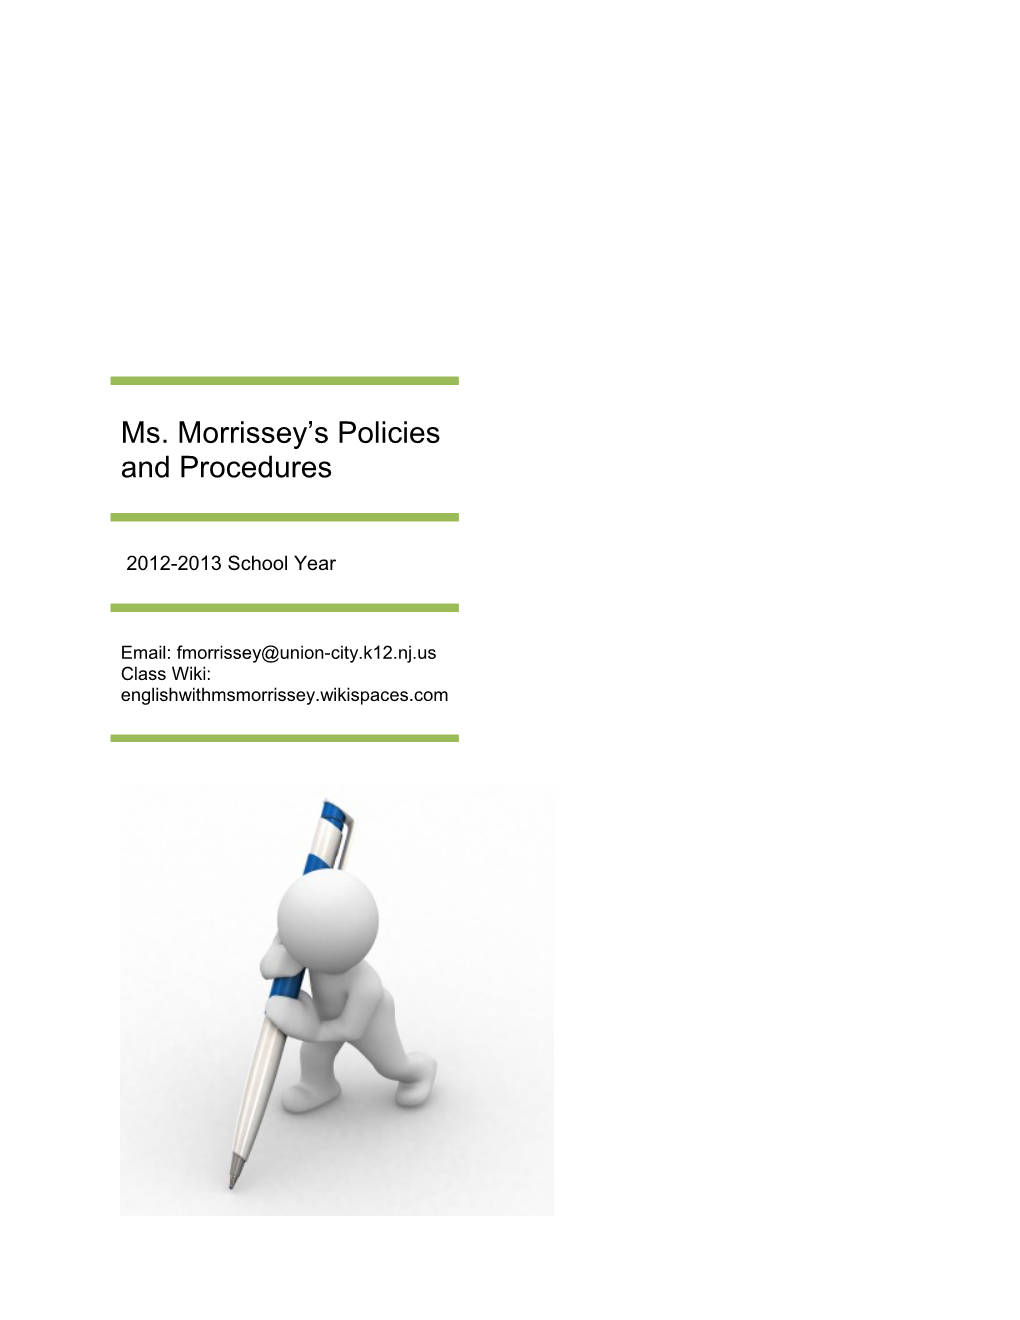 Ms. Morrissey S Policies and Procedures